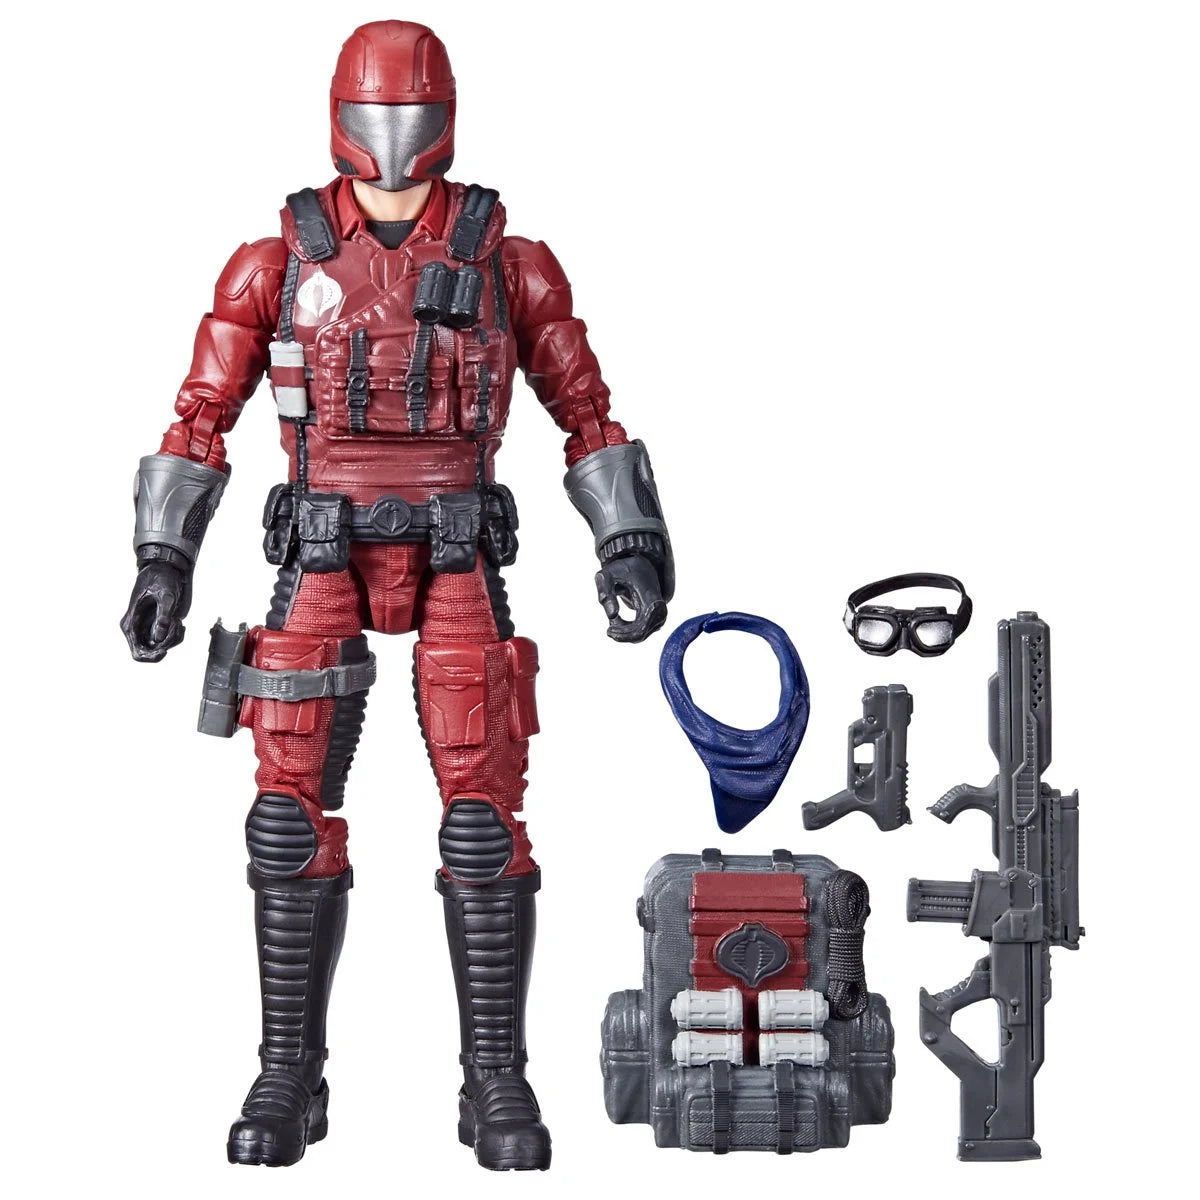 Pre-Sale - G.I. Joe Classified Series Cobra Crimson Viper 6-Inch Action Figure